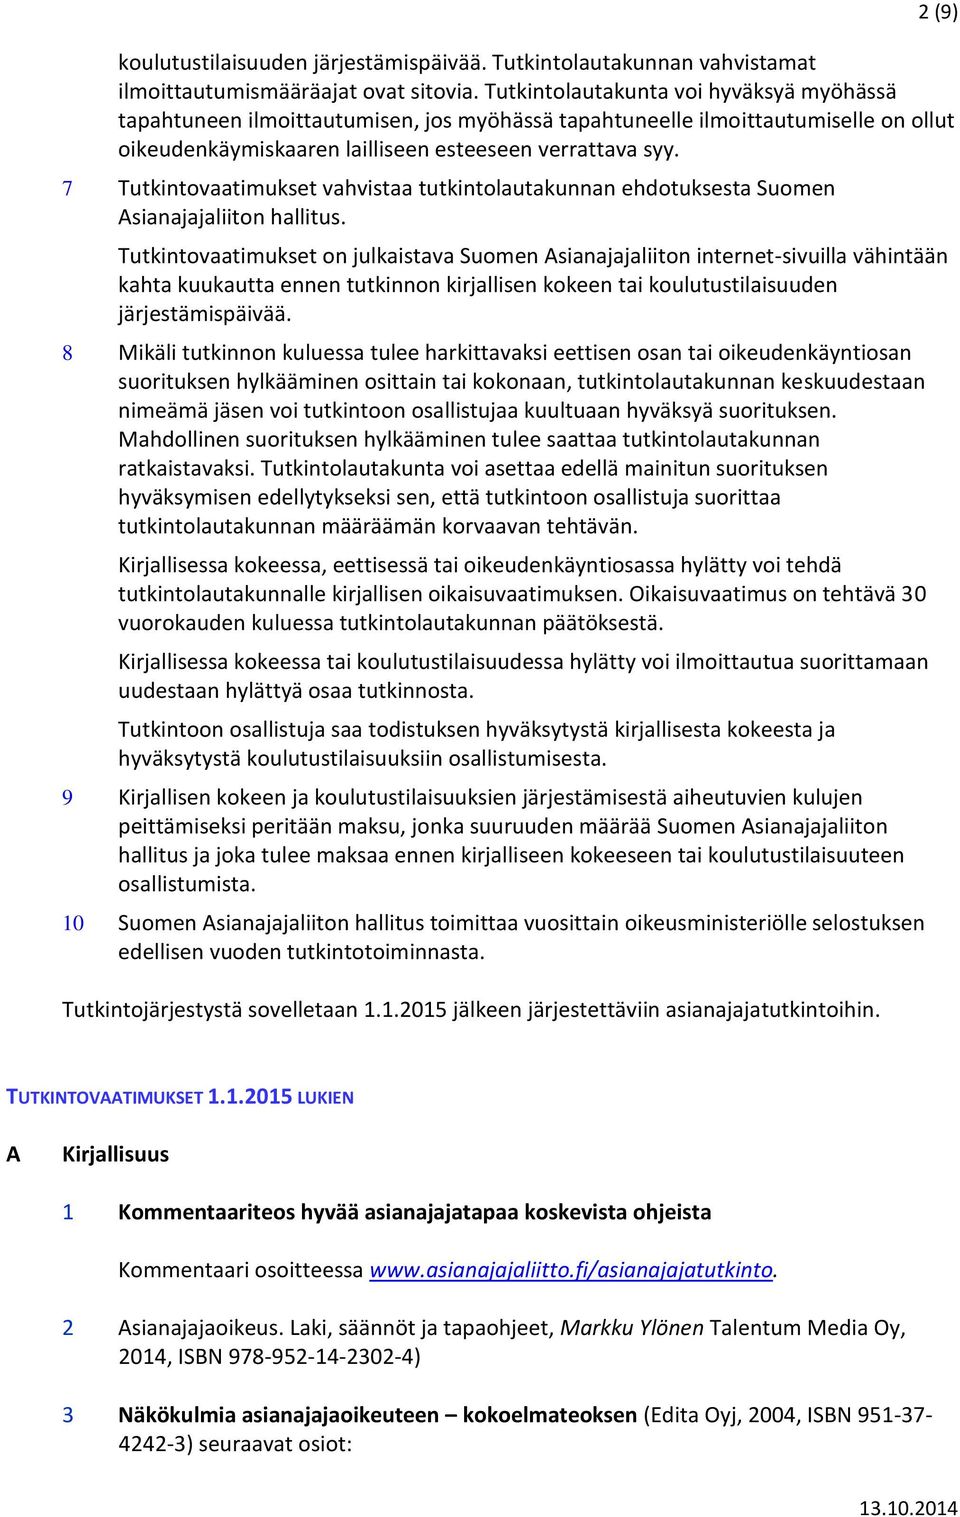 7 Tutkintovaatimukset vahvistaa tutkintolautakunnan ehdotuksesta Suomen Asianajajaliiton hallitus.